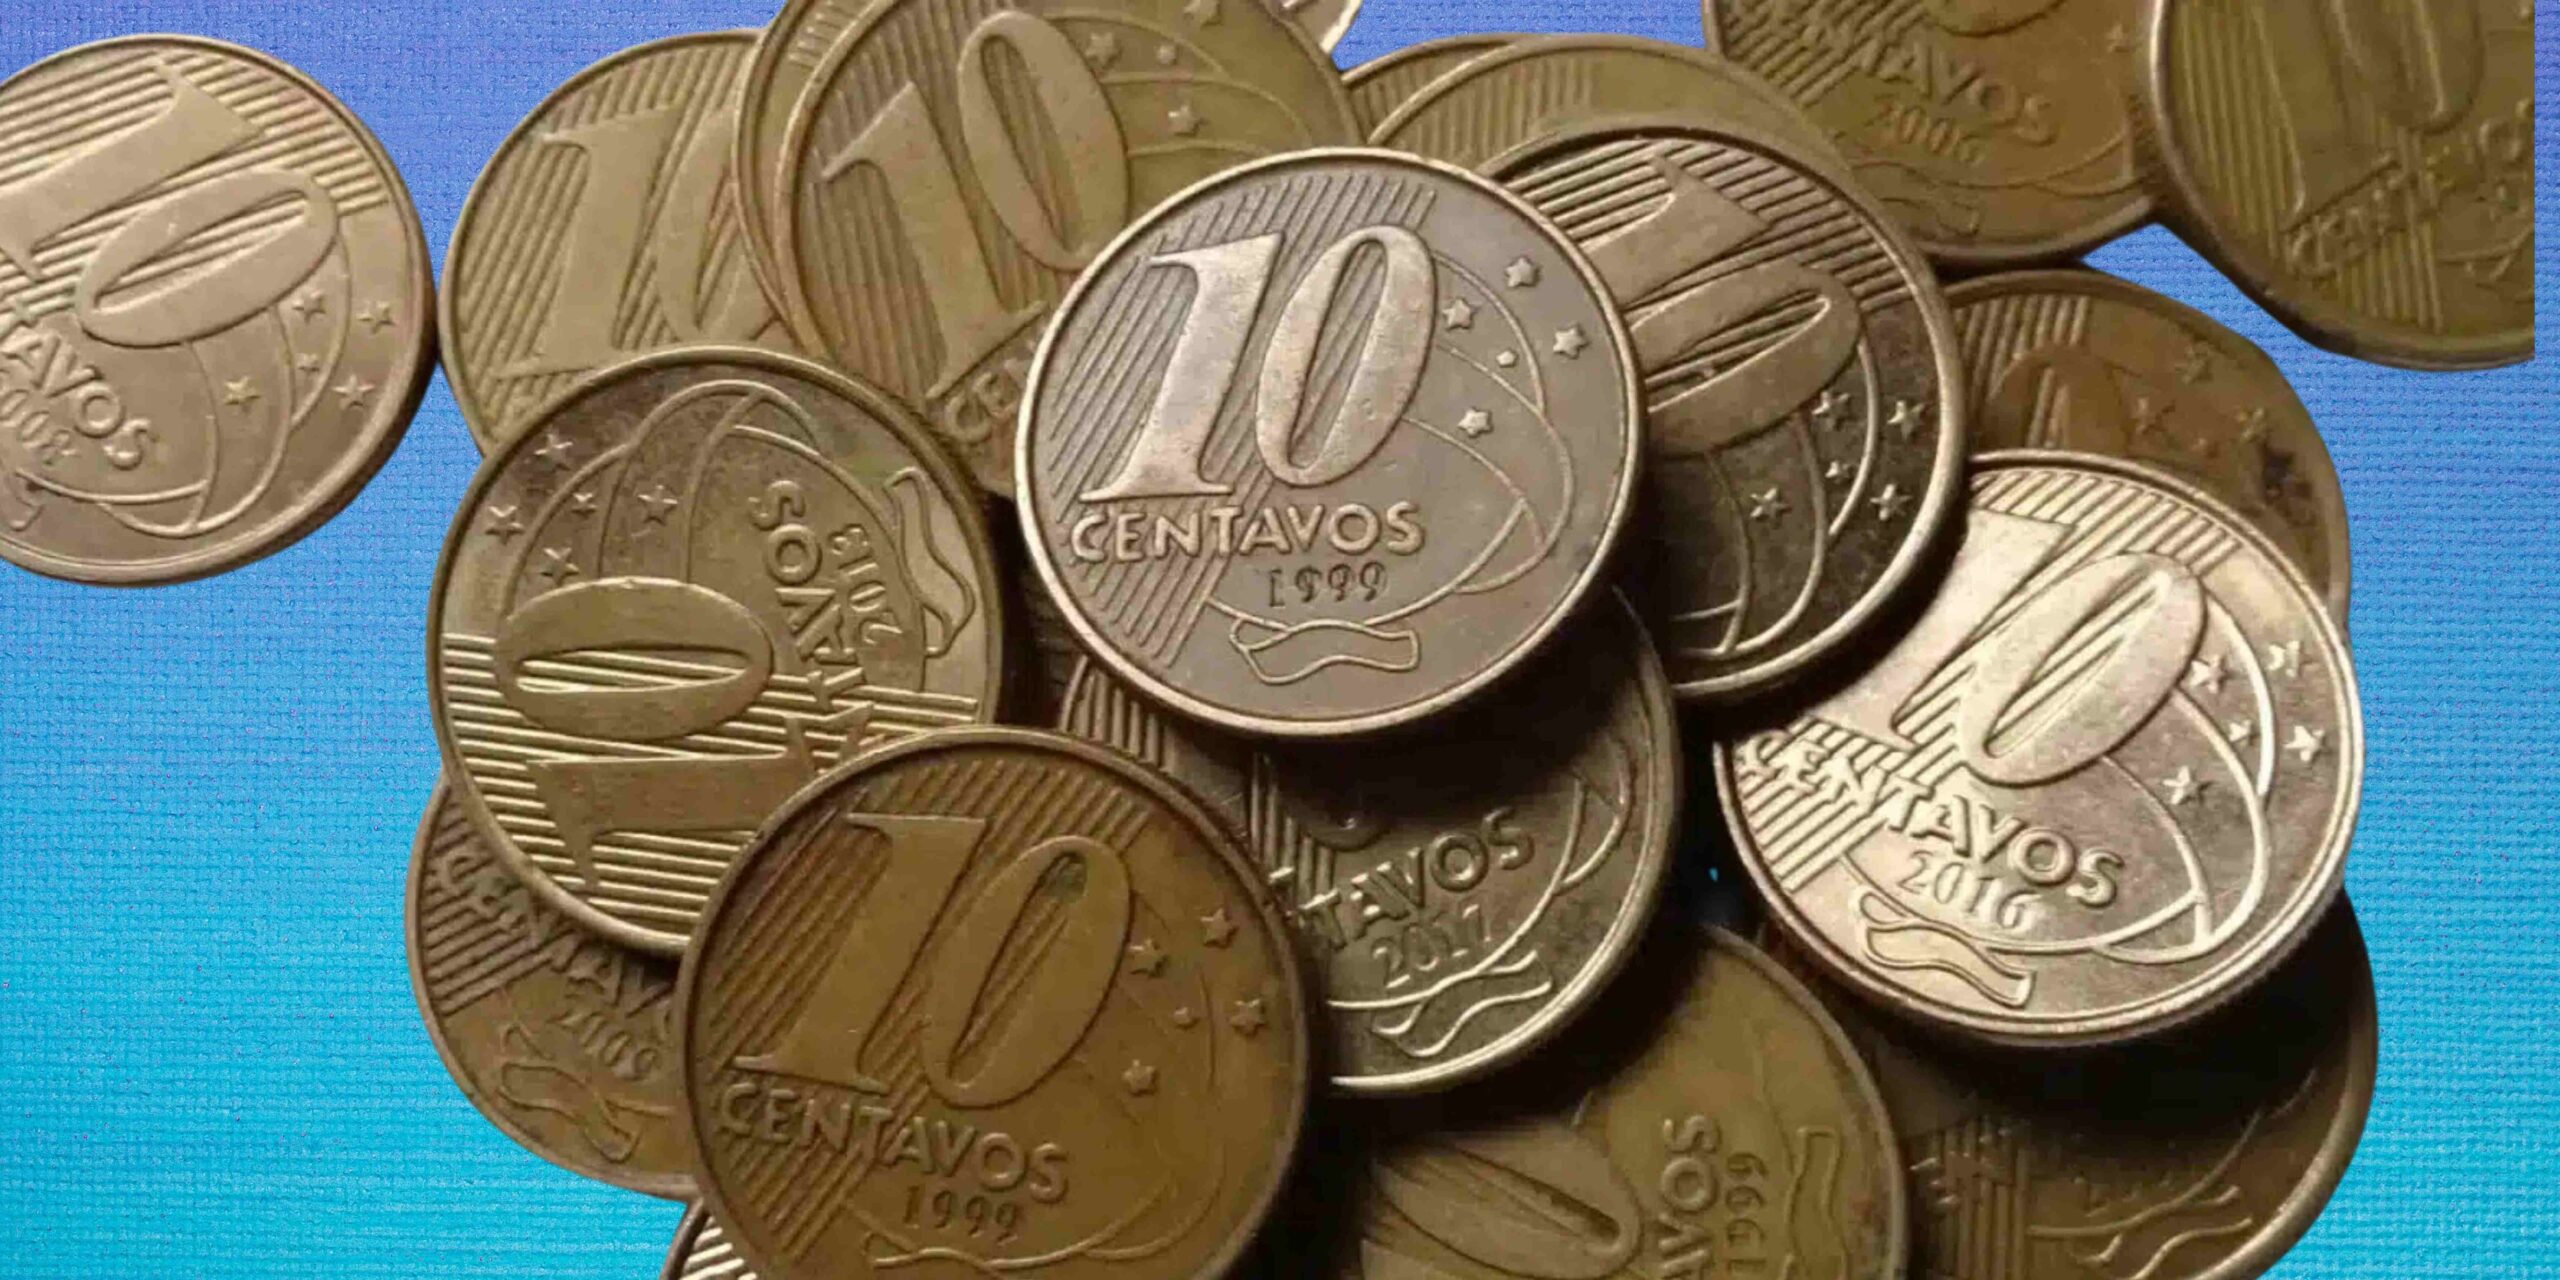 Acredite se quiser: Essas moedas de 10 centavos podem valer MAIS de R$500,00! Confira os modelos